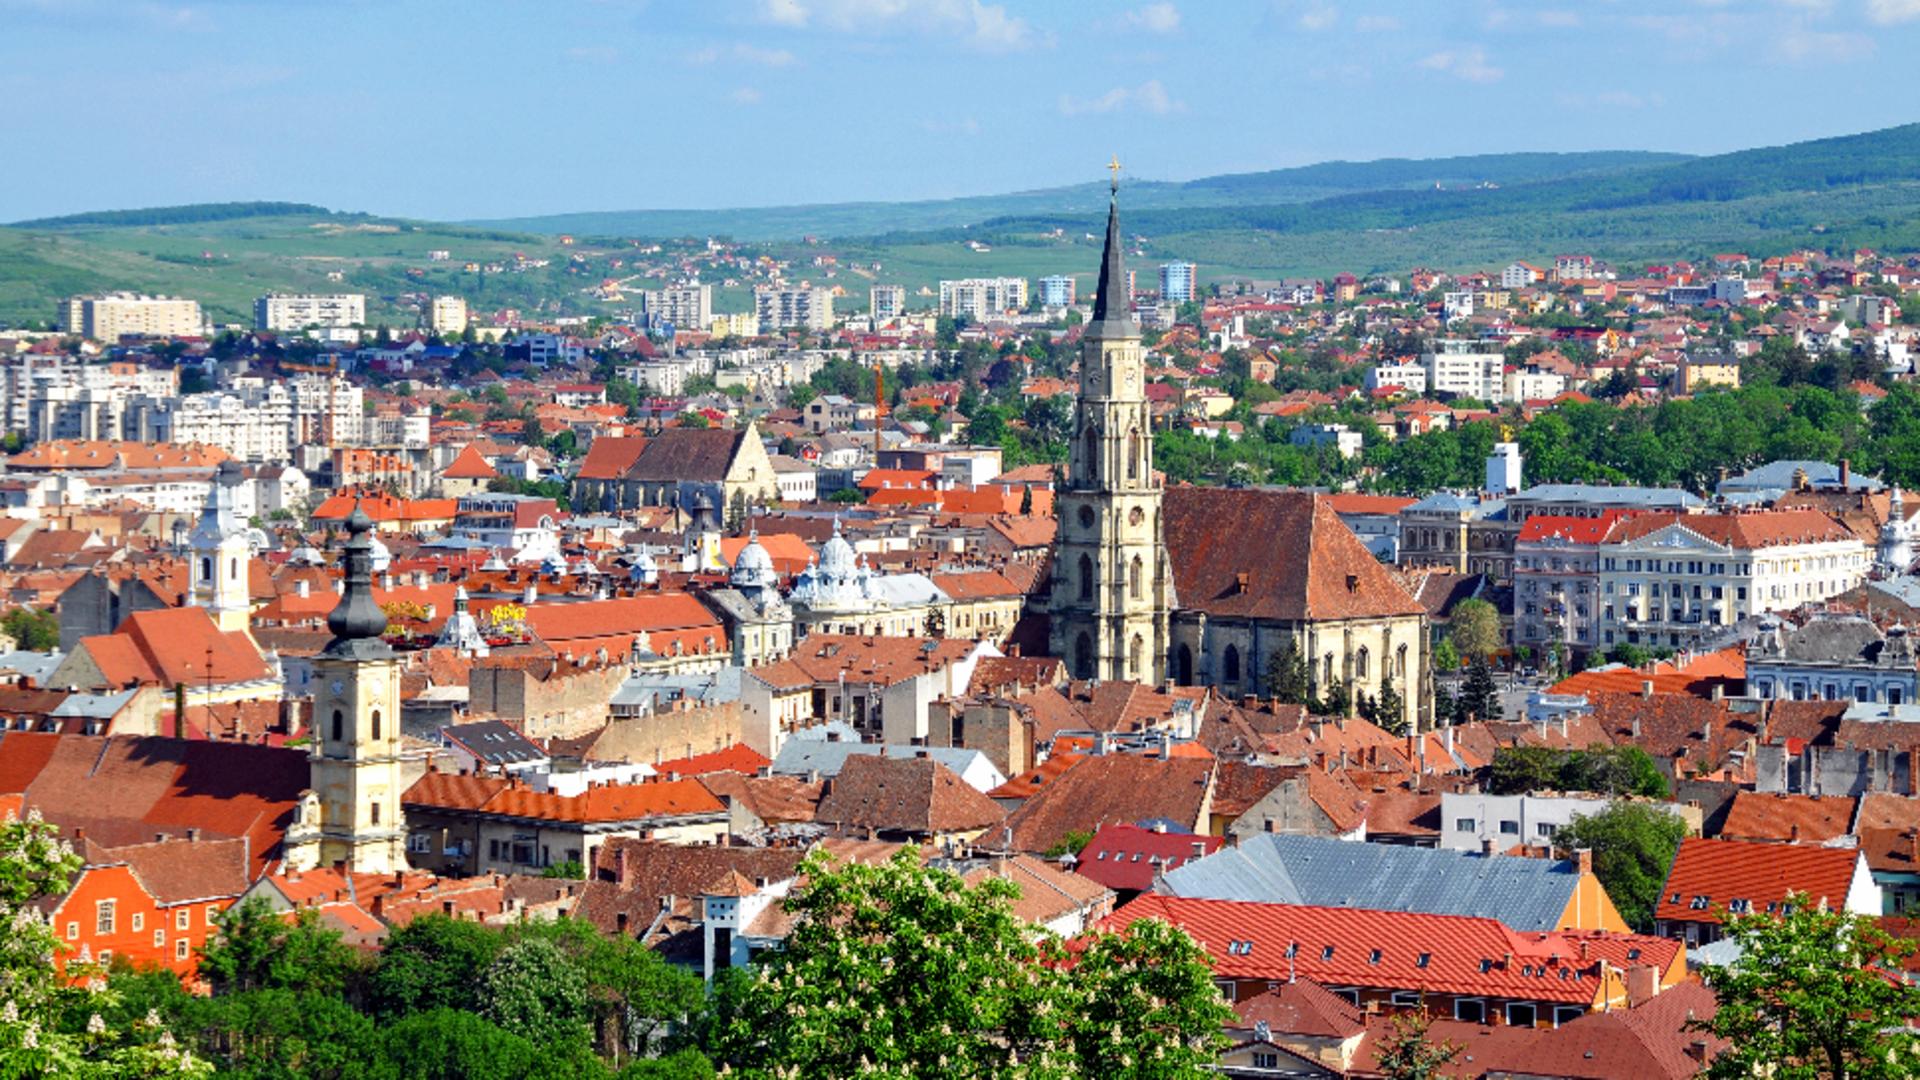 Un oraș din România a ajuns în Top 10 al celor mai bune orașe de locuit din Europa -și nu este București